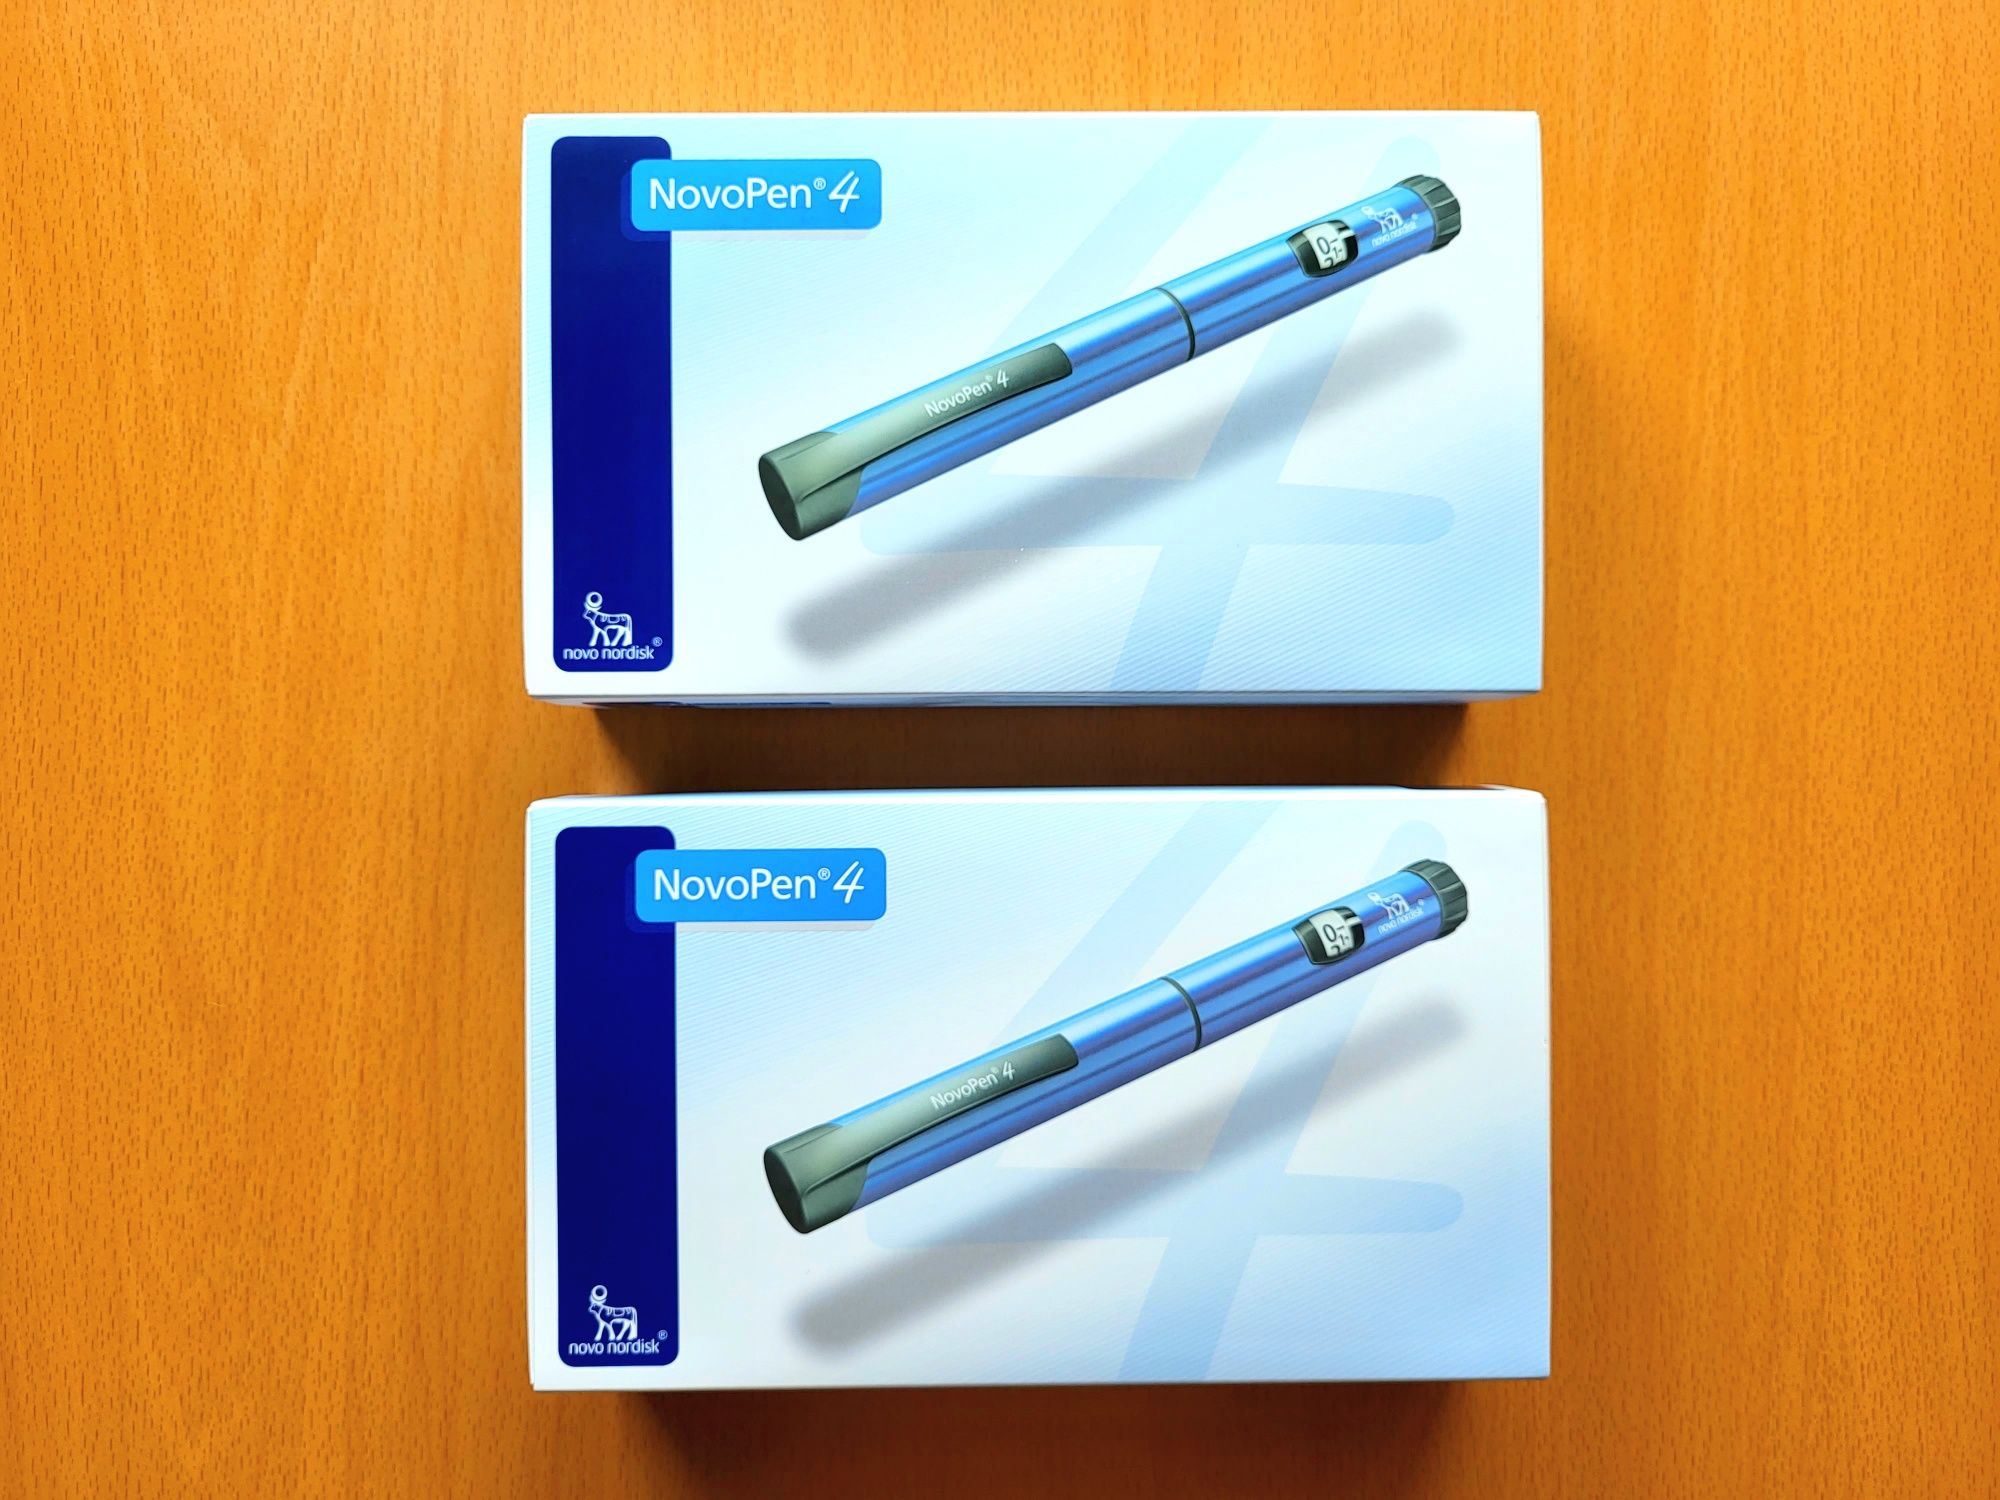 NovoPen 4 Wstrzykiwacz Pen insulinowy Nowy Kolor - Niebieski